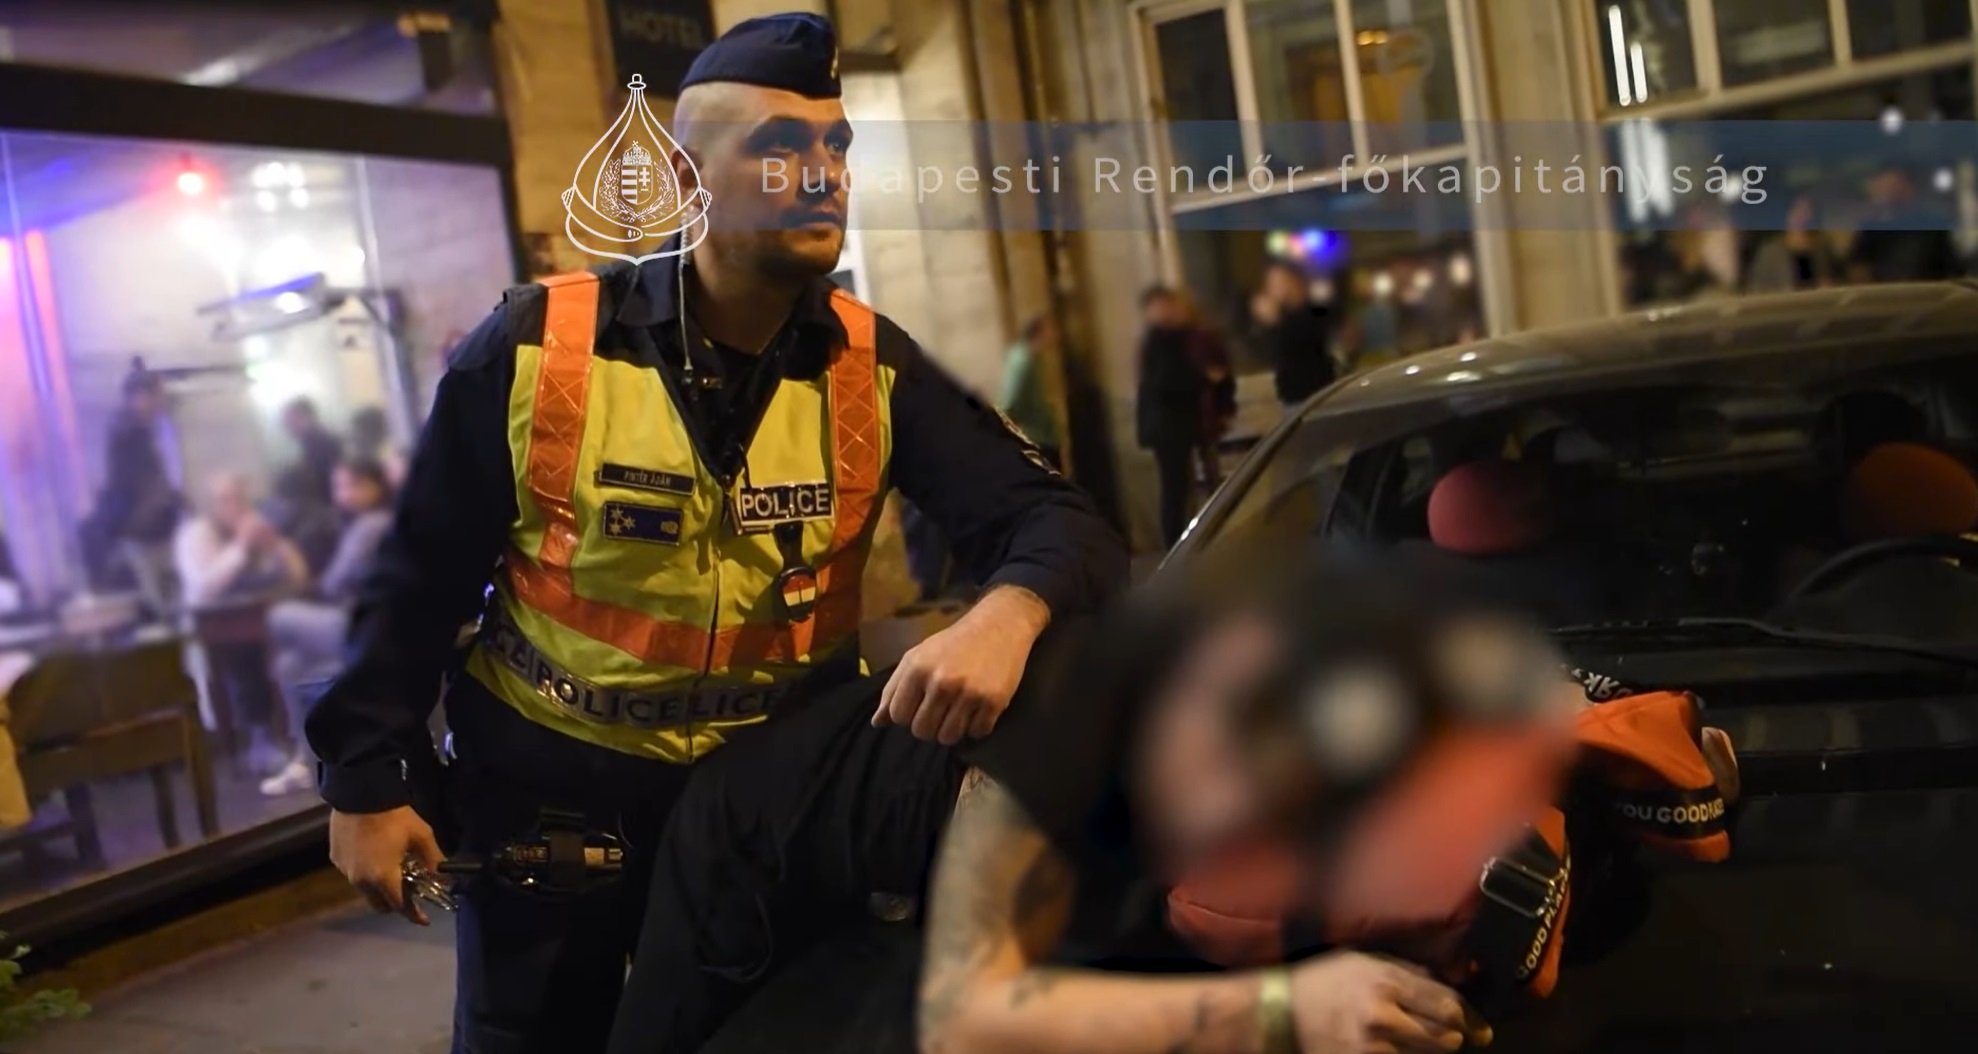 Majorannát és porcukrot áruló kamudrogos dílert fogott el a rendőrség a bulinegyedben